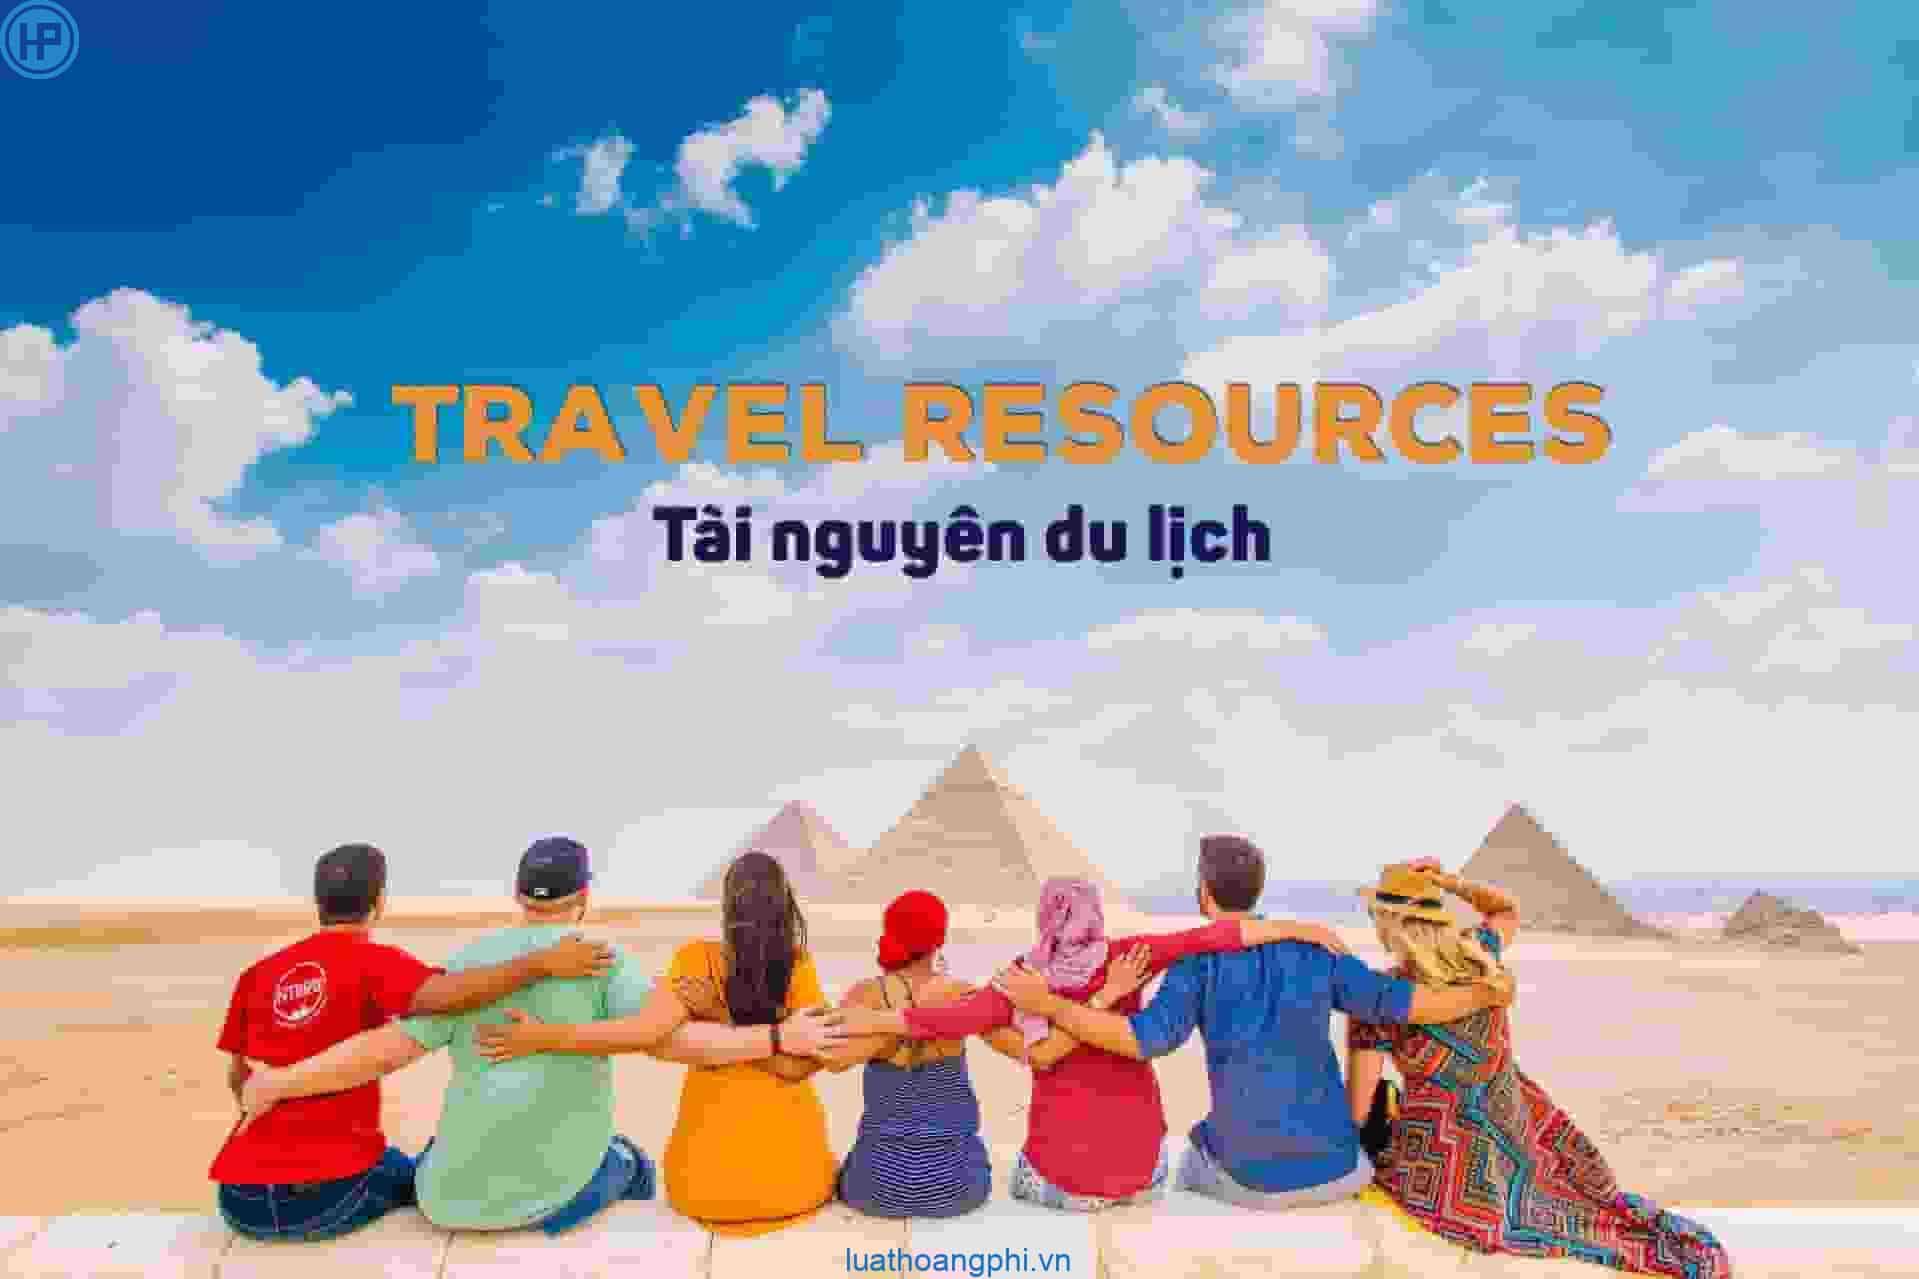 Khái niệm tài nguyên du lịch